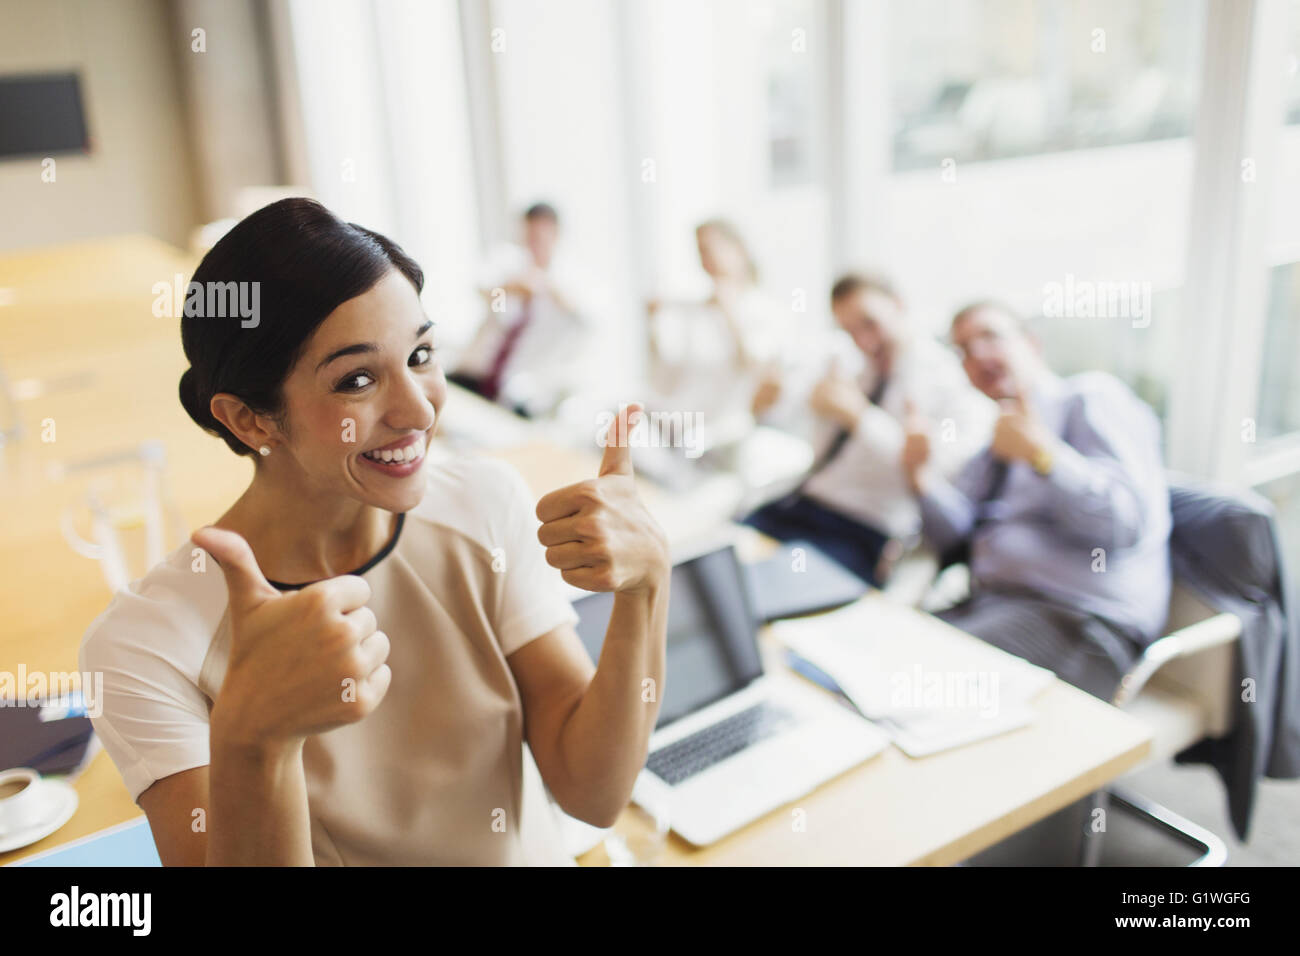 Portrait confident businesswoman et collègues gesturing thumbs-up dans la salle de conférence Banque D'Images